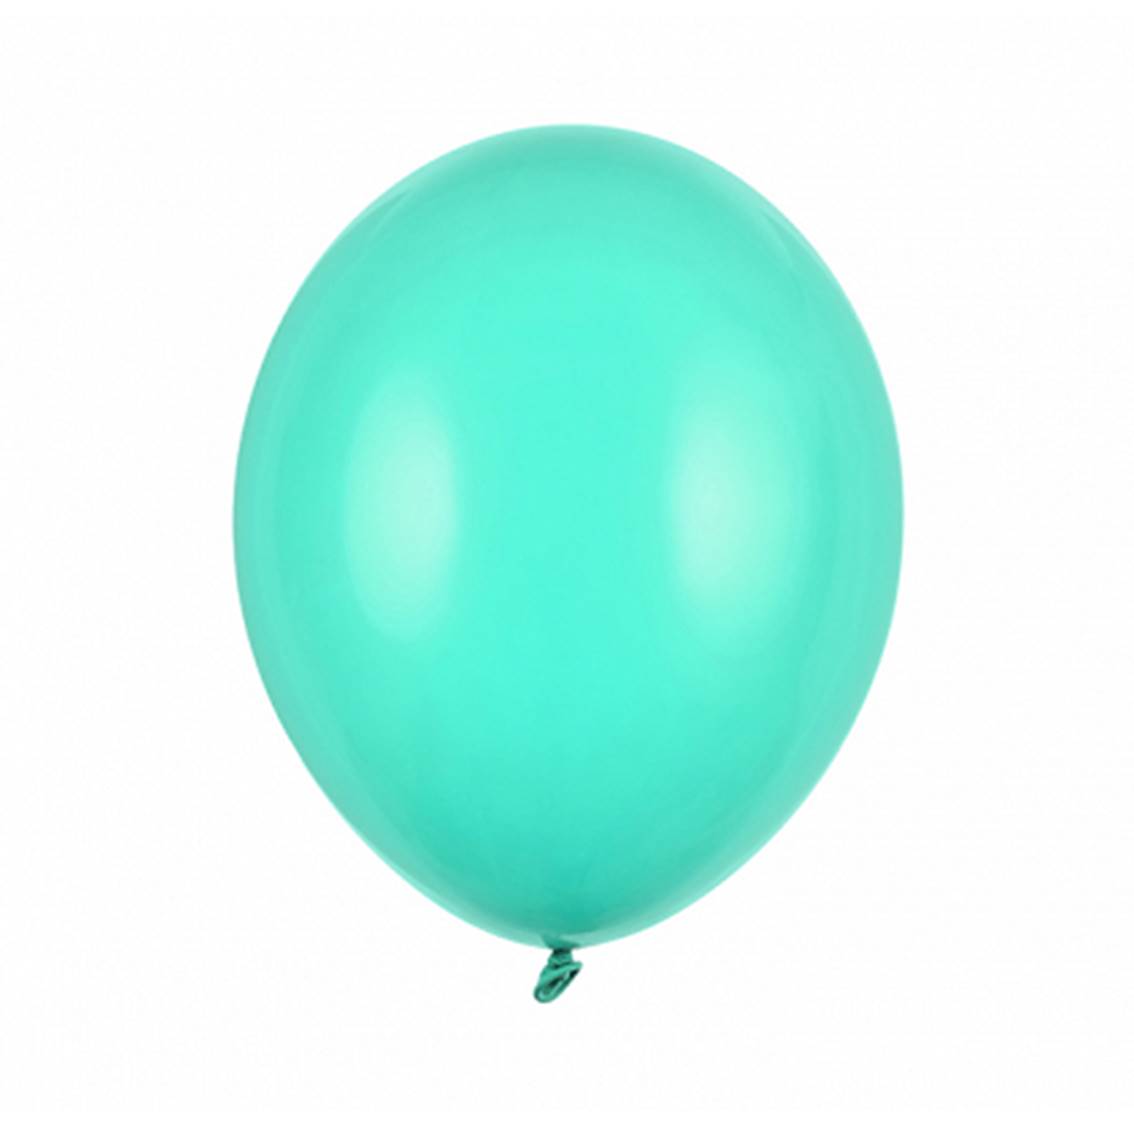 Balónek latexový světle mintový 30 cm 1 ks